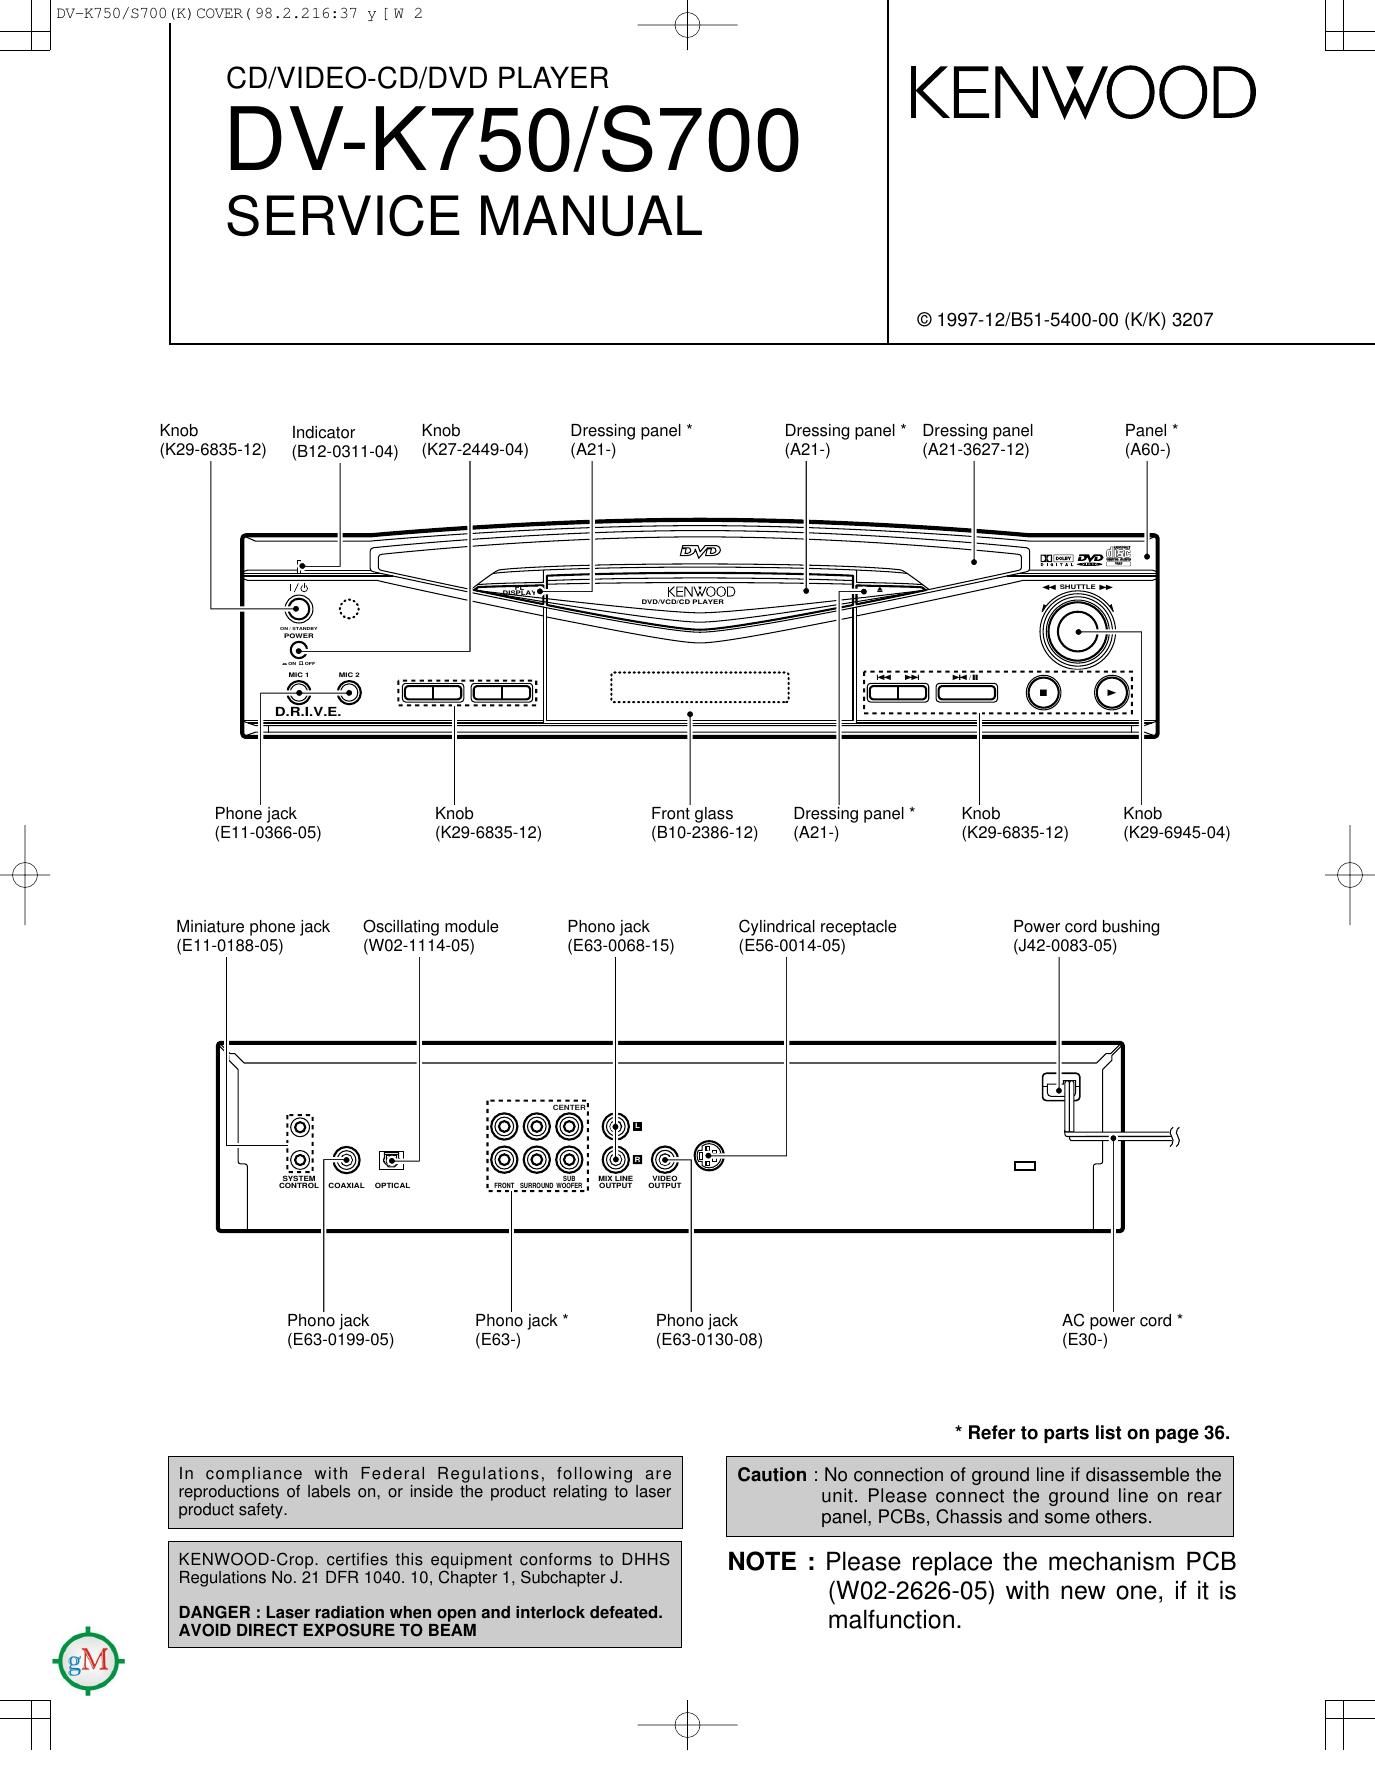 Kenwood DVK 750 Service Manual